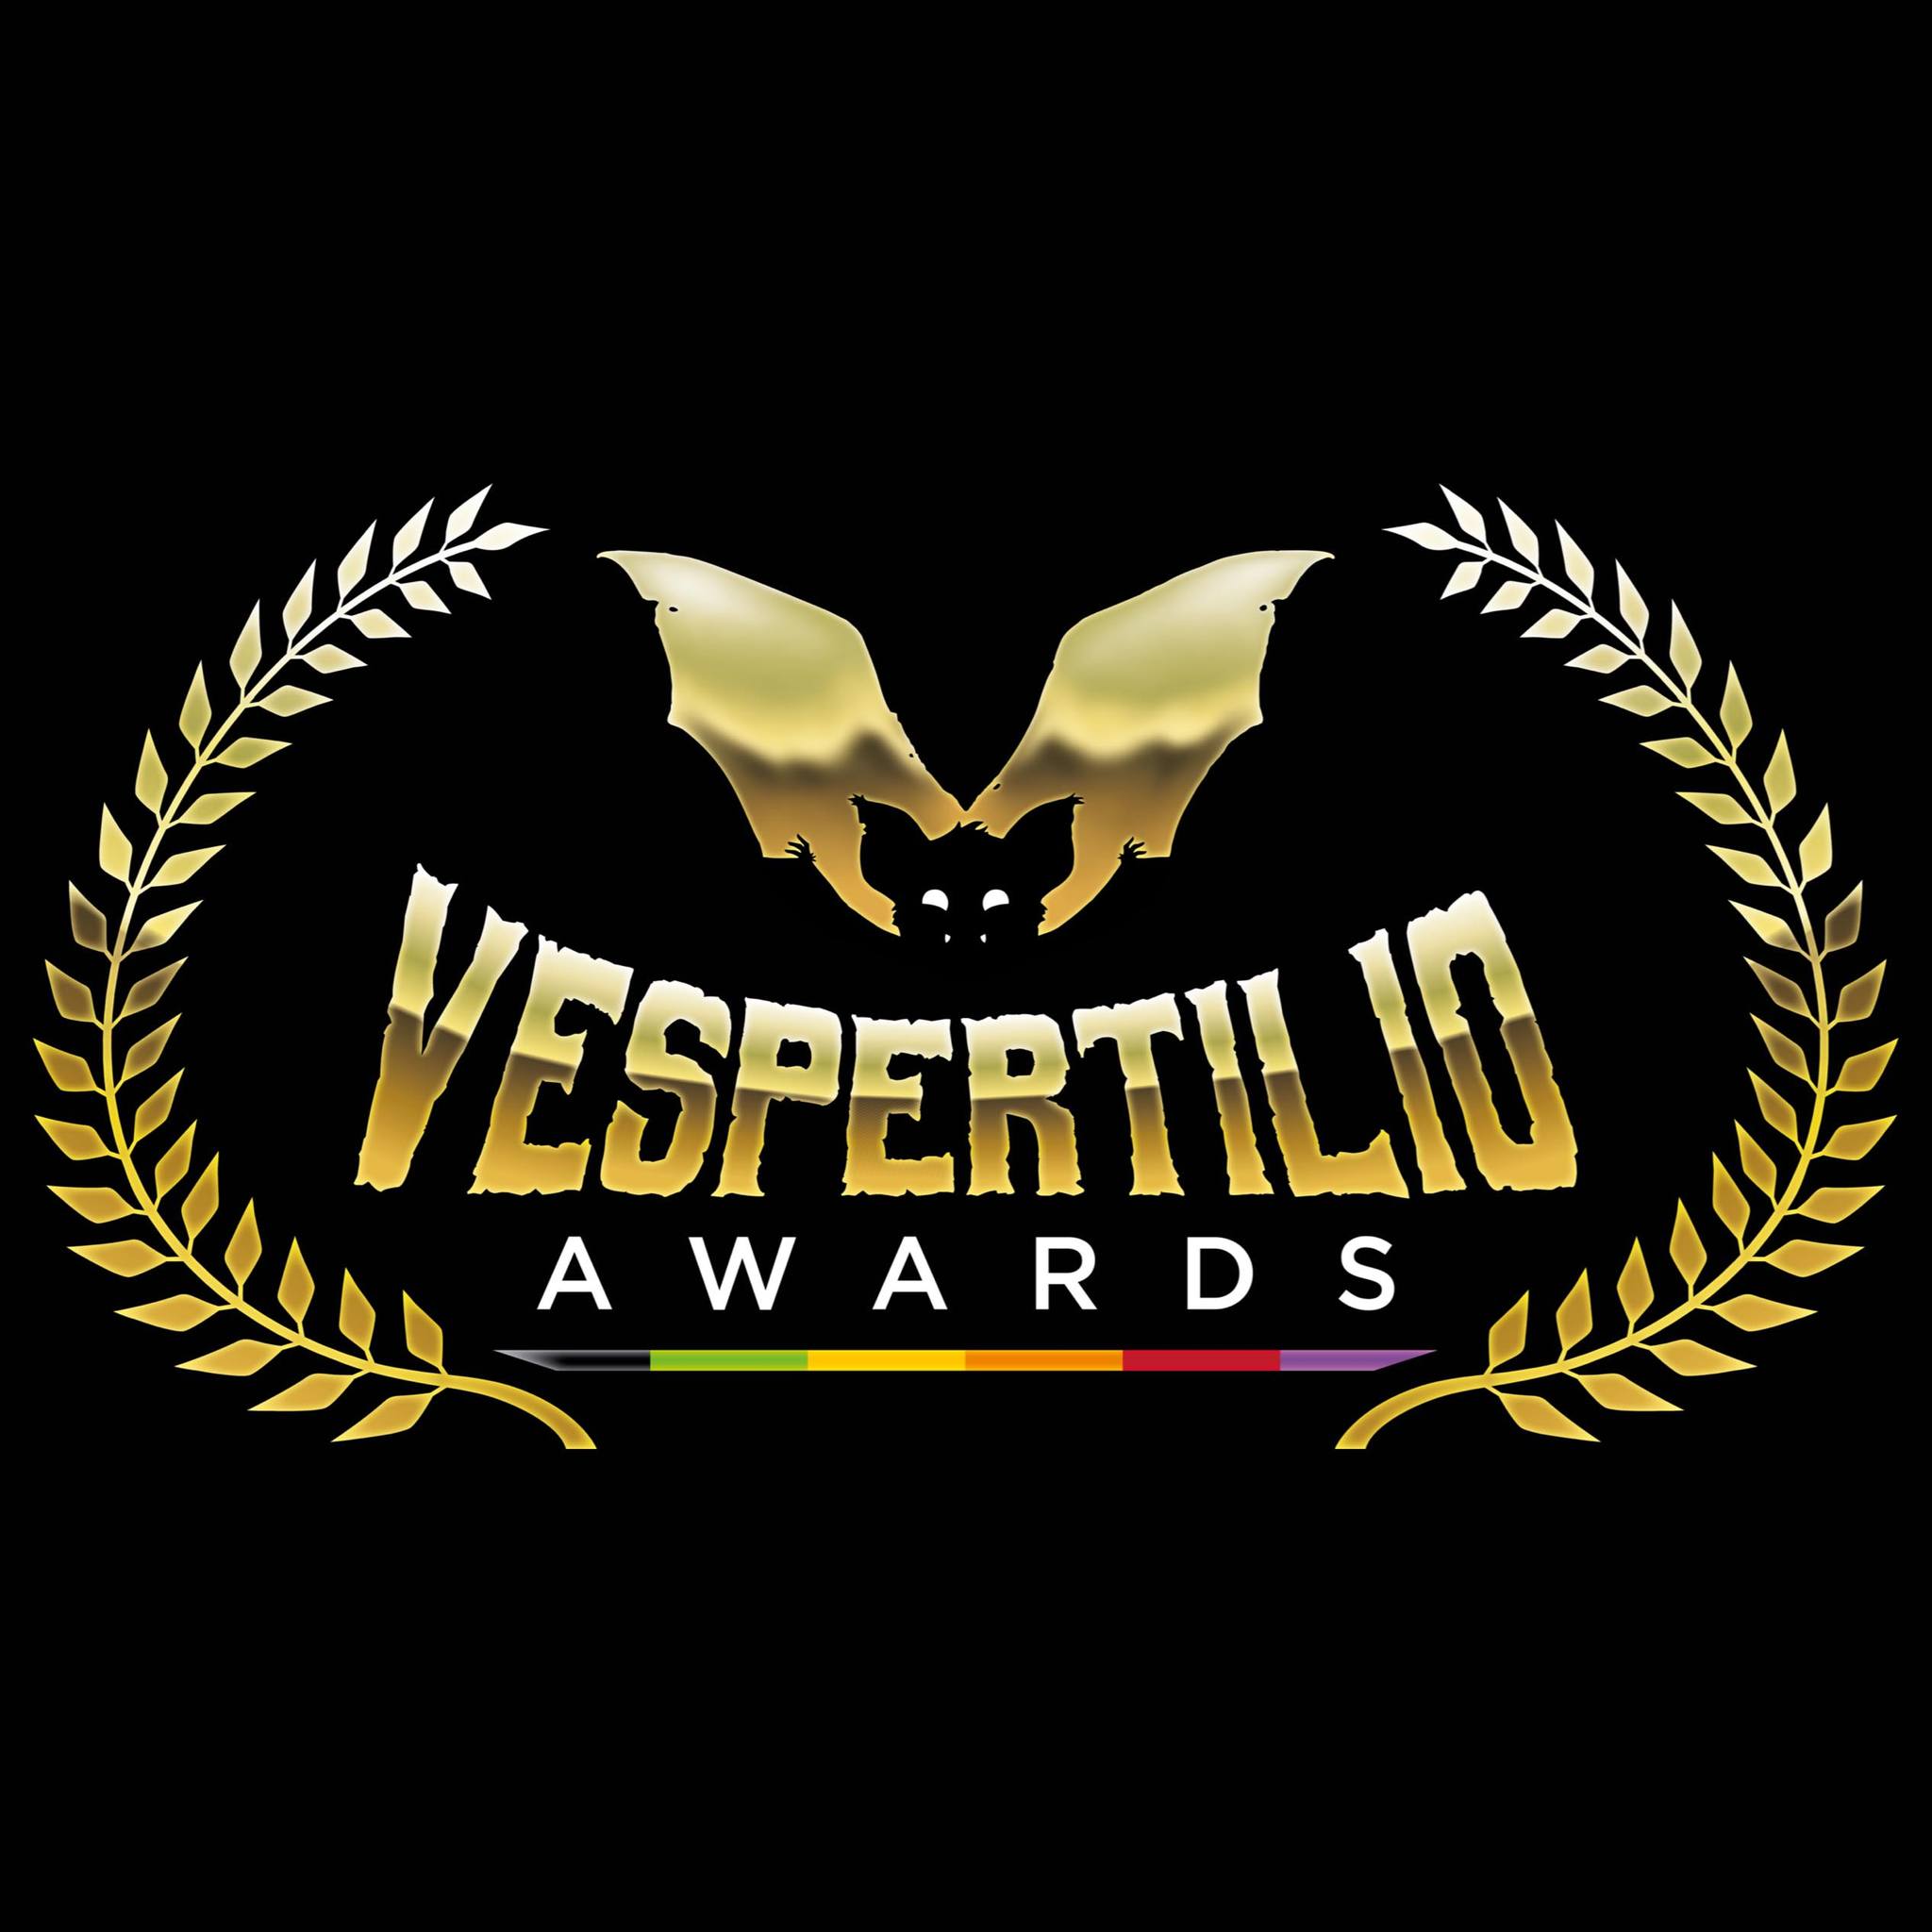 Vespertilio Awards: il 25 maggio a Roma le consegne